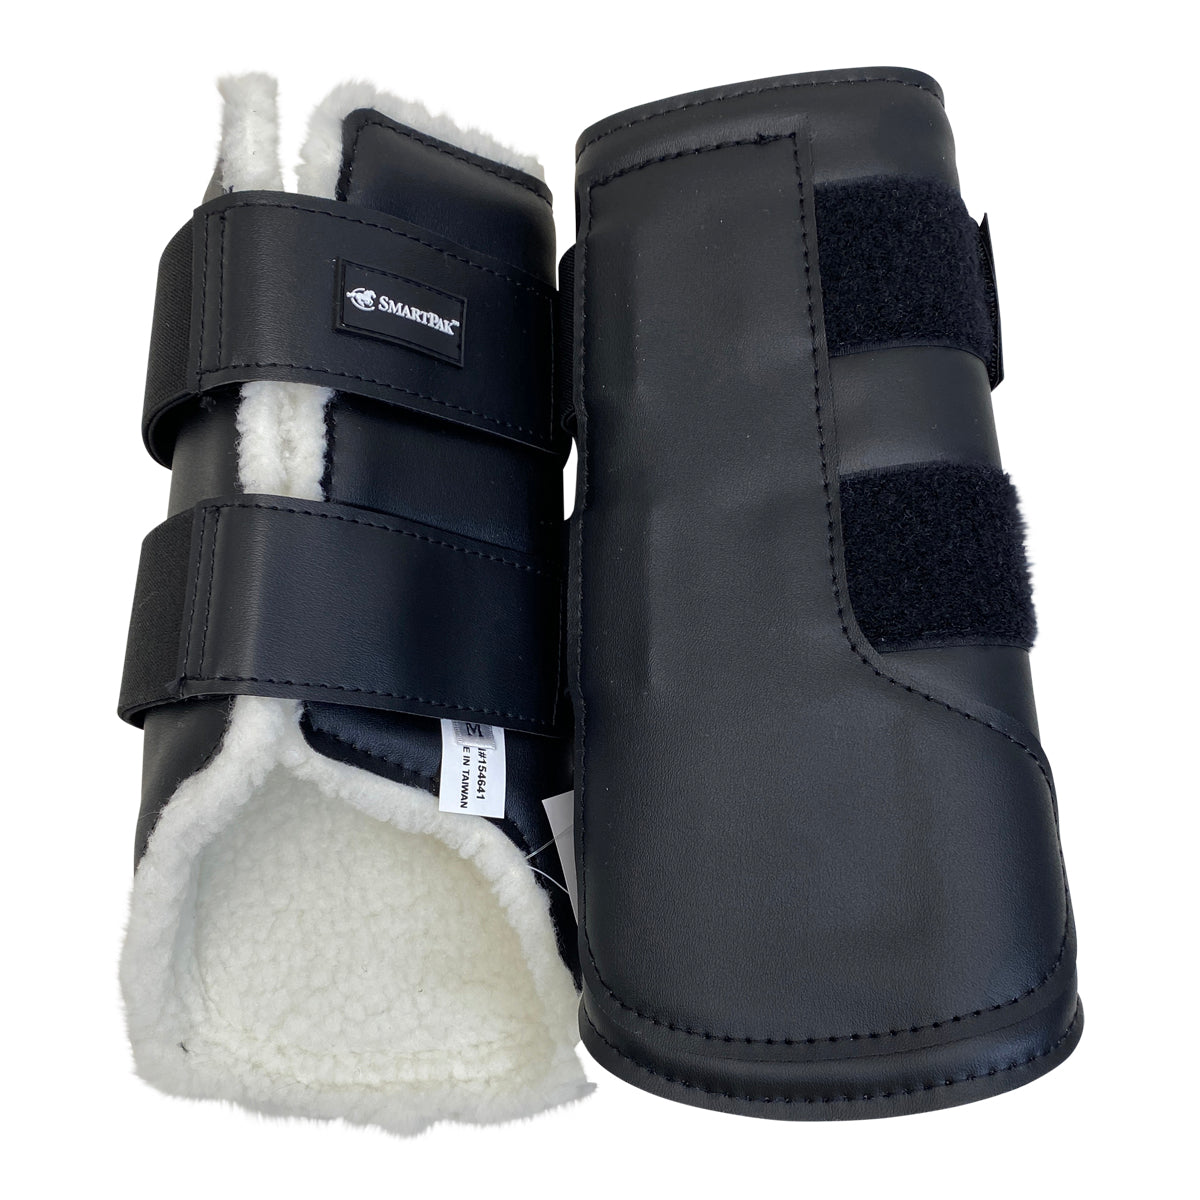 SmartPak Hind Sport Boots in Black - Medium